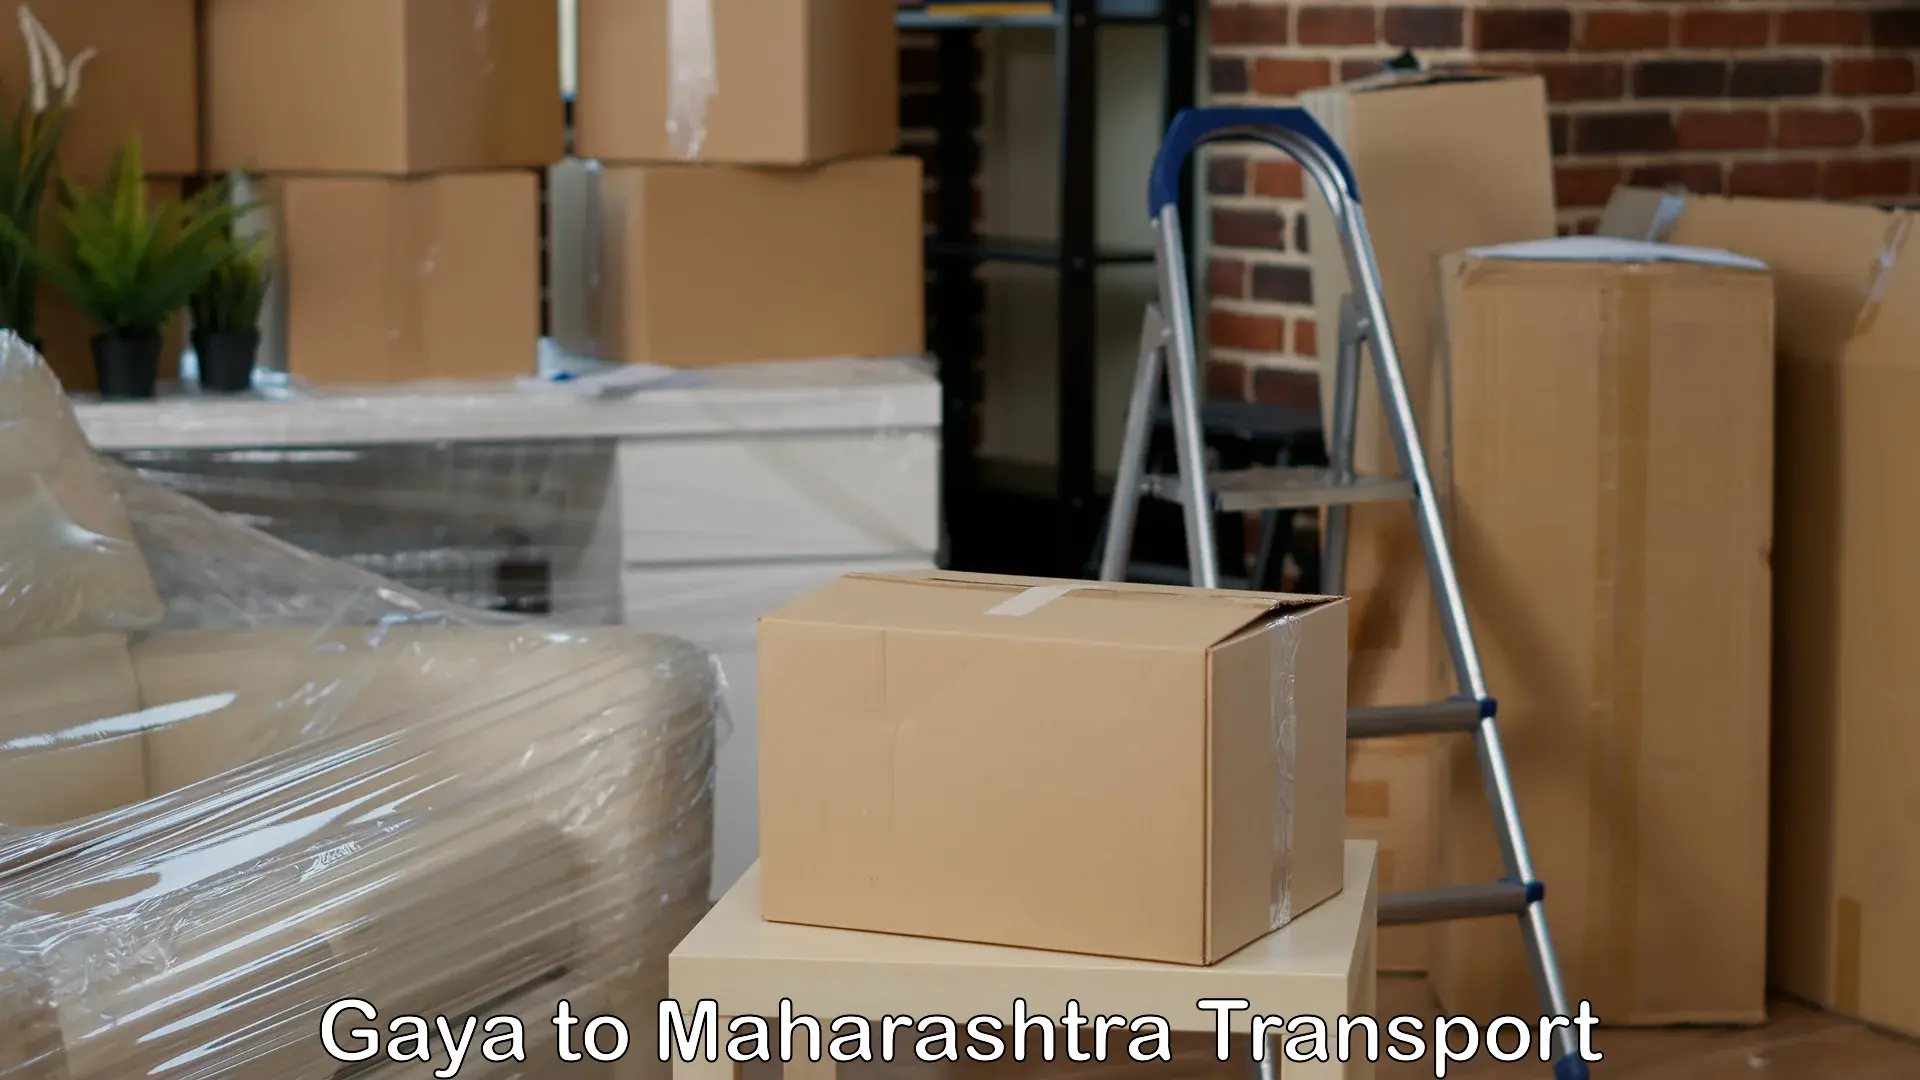 Air cargo transport services Gaya to Pandharkawada